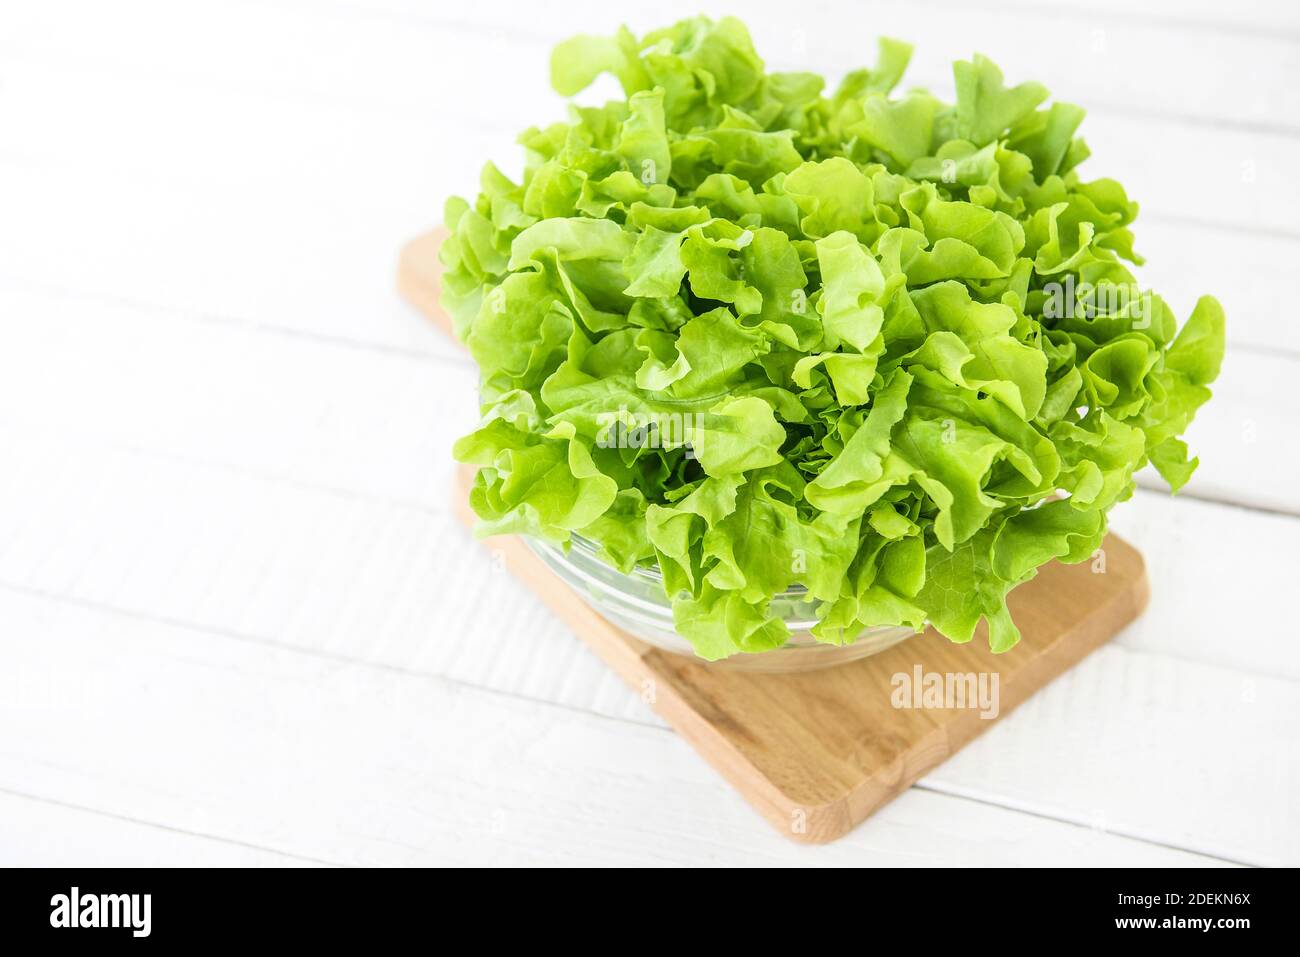 Frische Bio gesunde grüne Eiche Salat Gemüse in einer Glasschüssel auf Holzplatte in der Küche, bereit, als Salat oder kochen zu essen Stockfoto